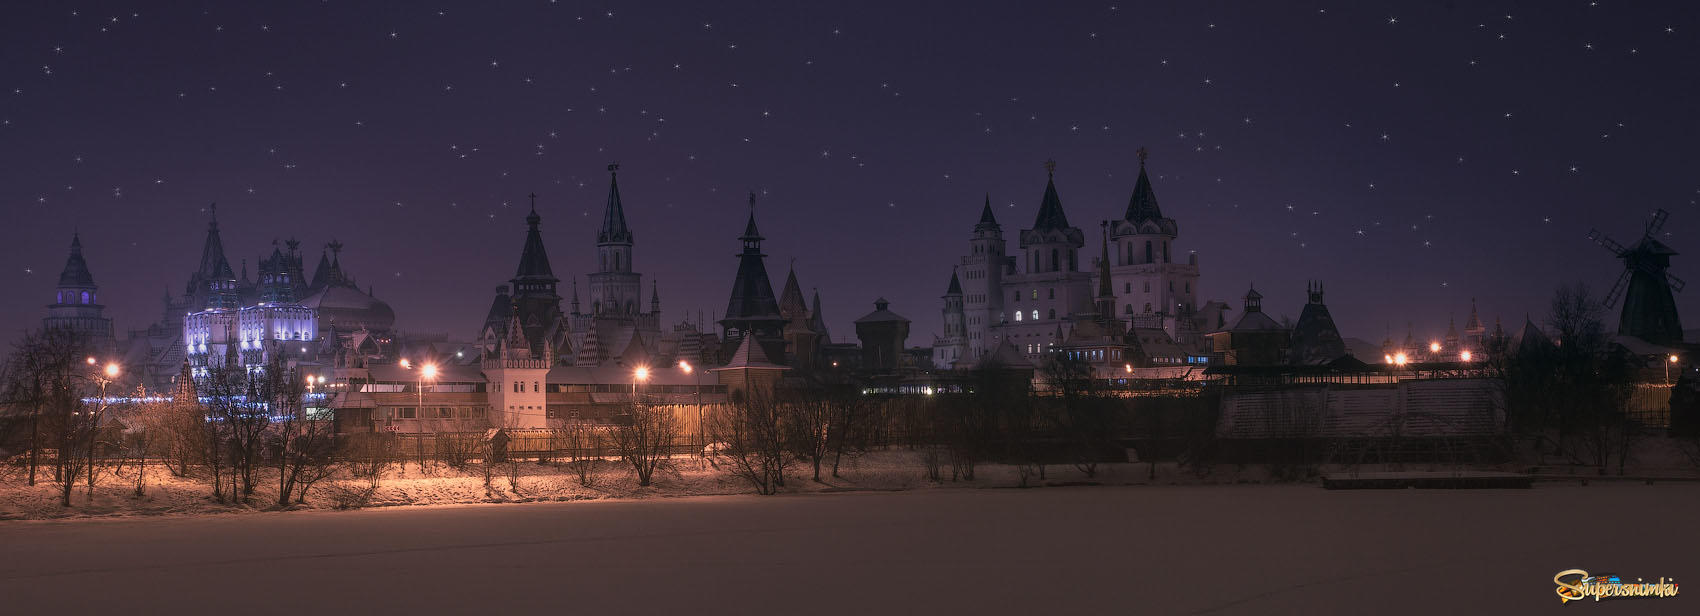 Рождественский кремль